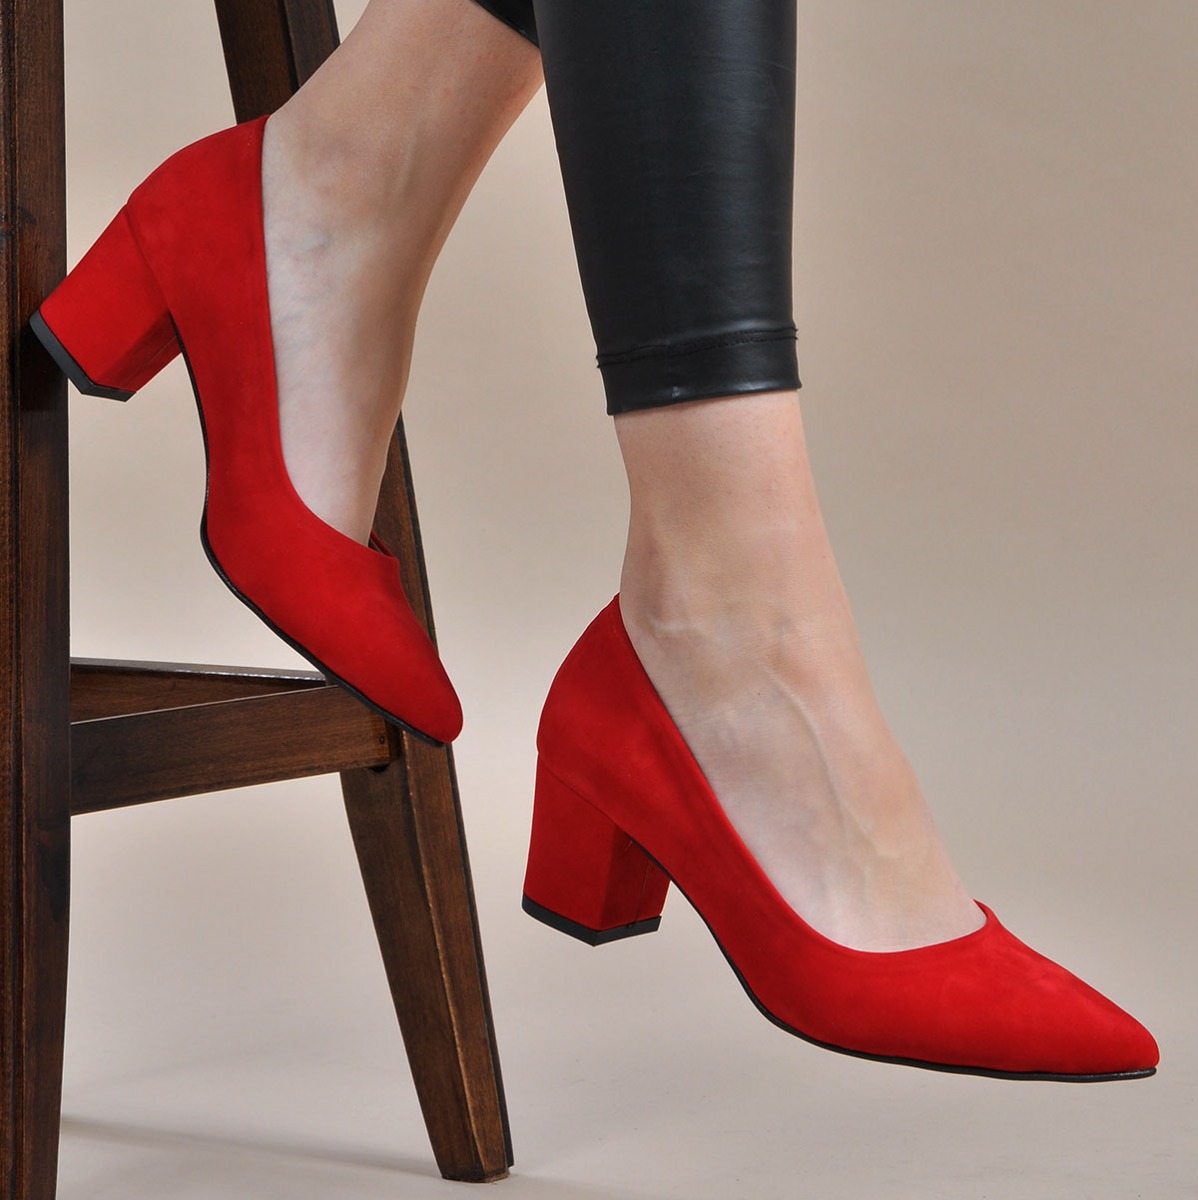 Flo Kadın  Kırmızı-Süet Klasik Topuklu Ayakkabı VZN19-111K. 1